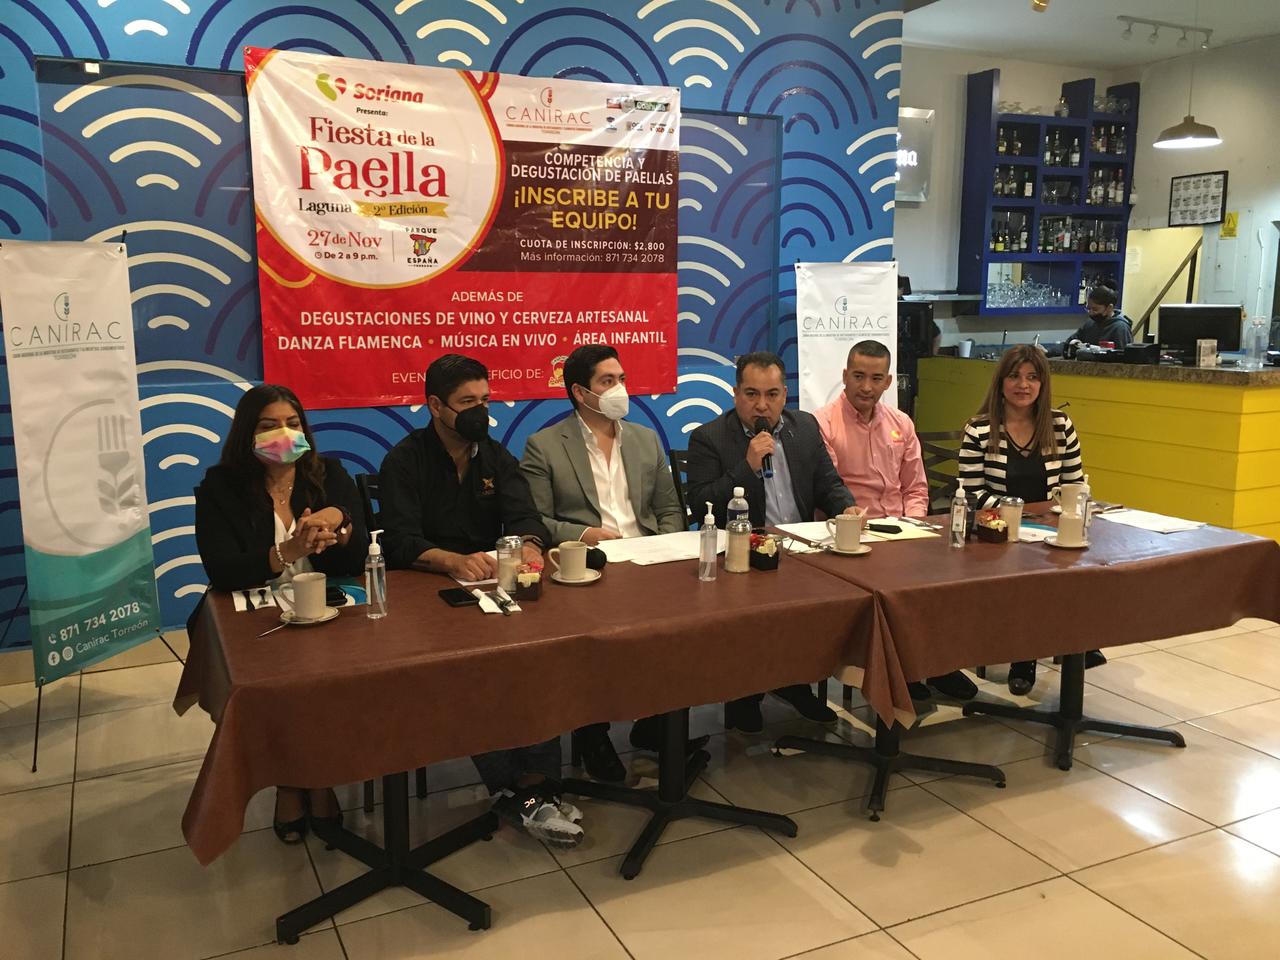 Canirac organiza Fiesta de la Paella a beneficio de Casa Hogar Abrázame